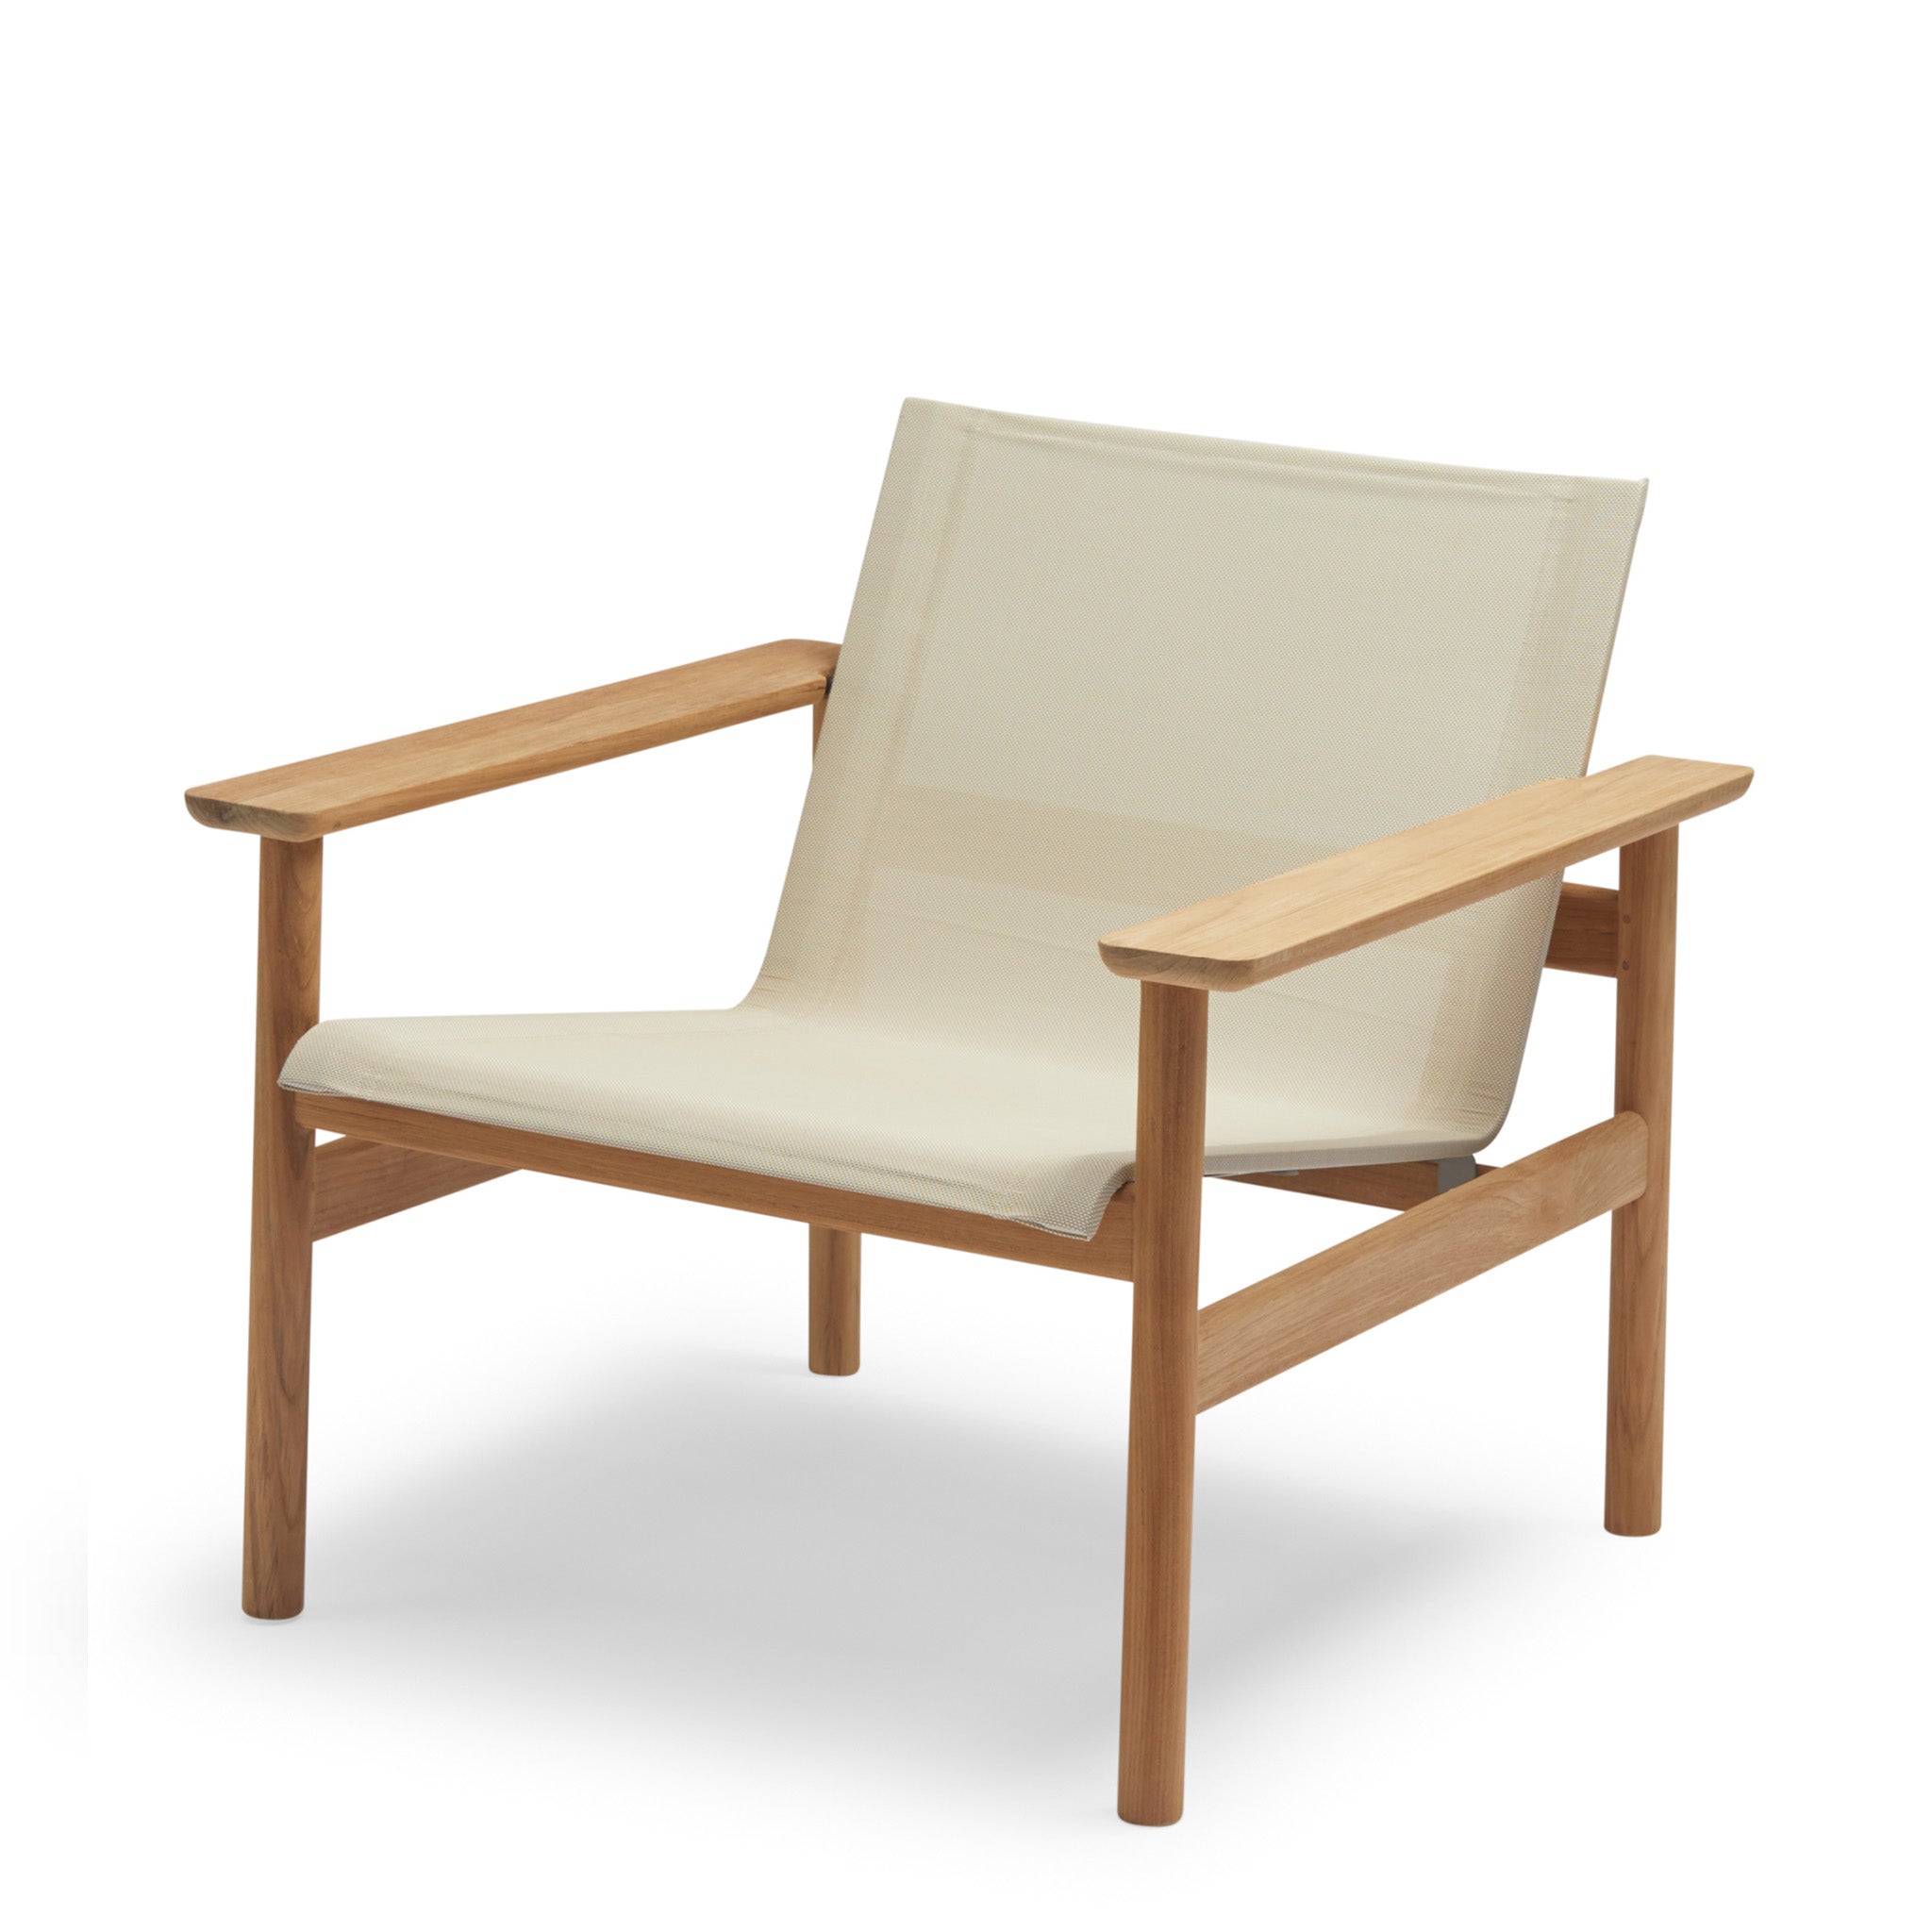 Pelagus Lounge Chair by Skagerak